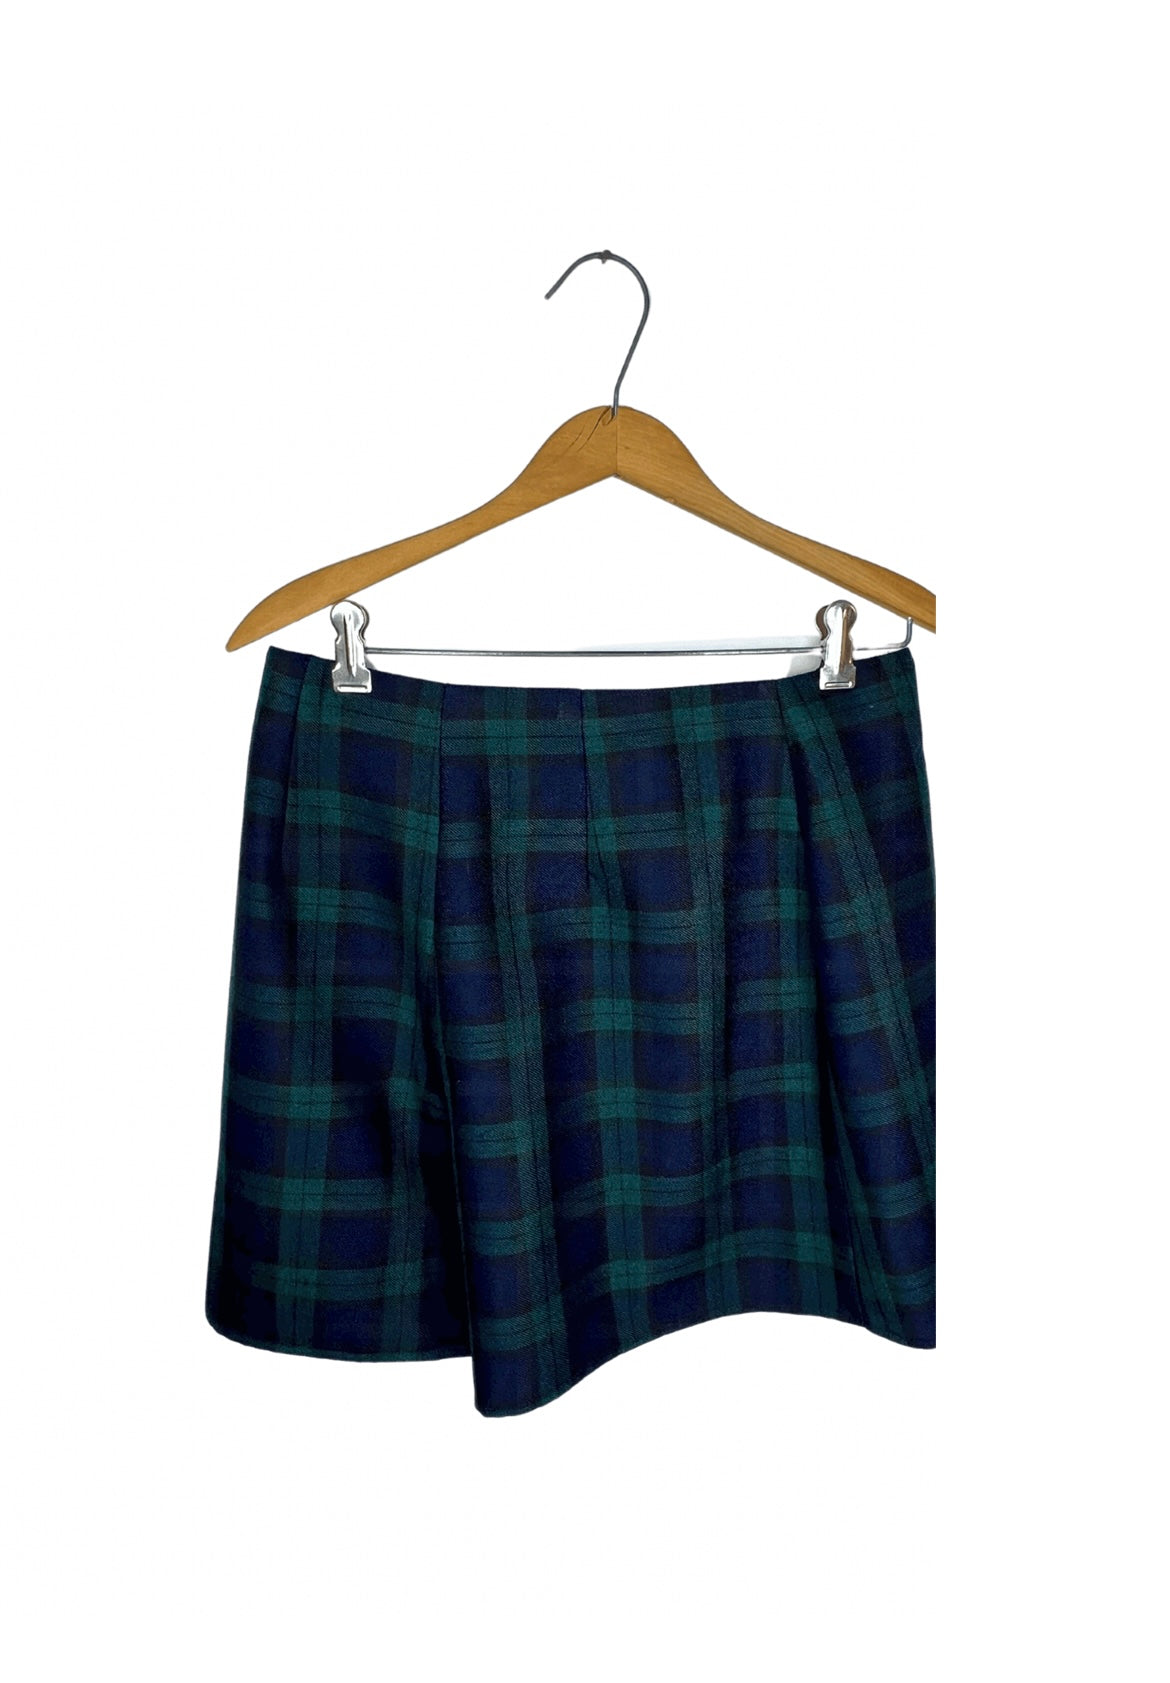 Vintage 90’s Blackwatch Plaid Schoolgirl Mini Skort Skirt